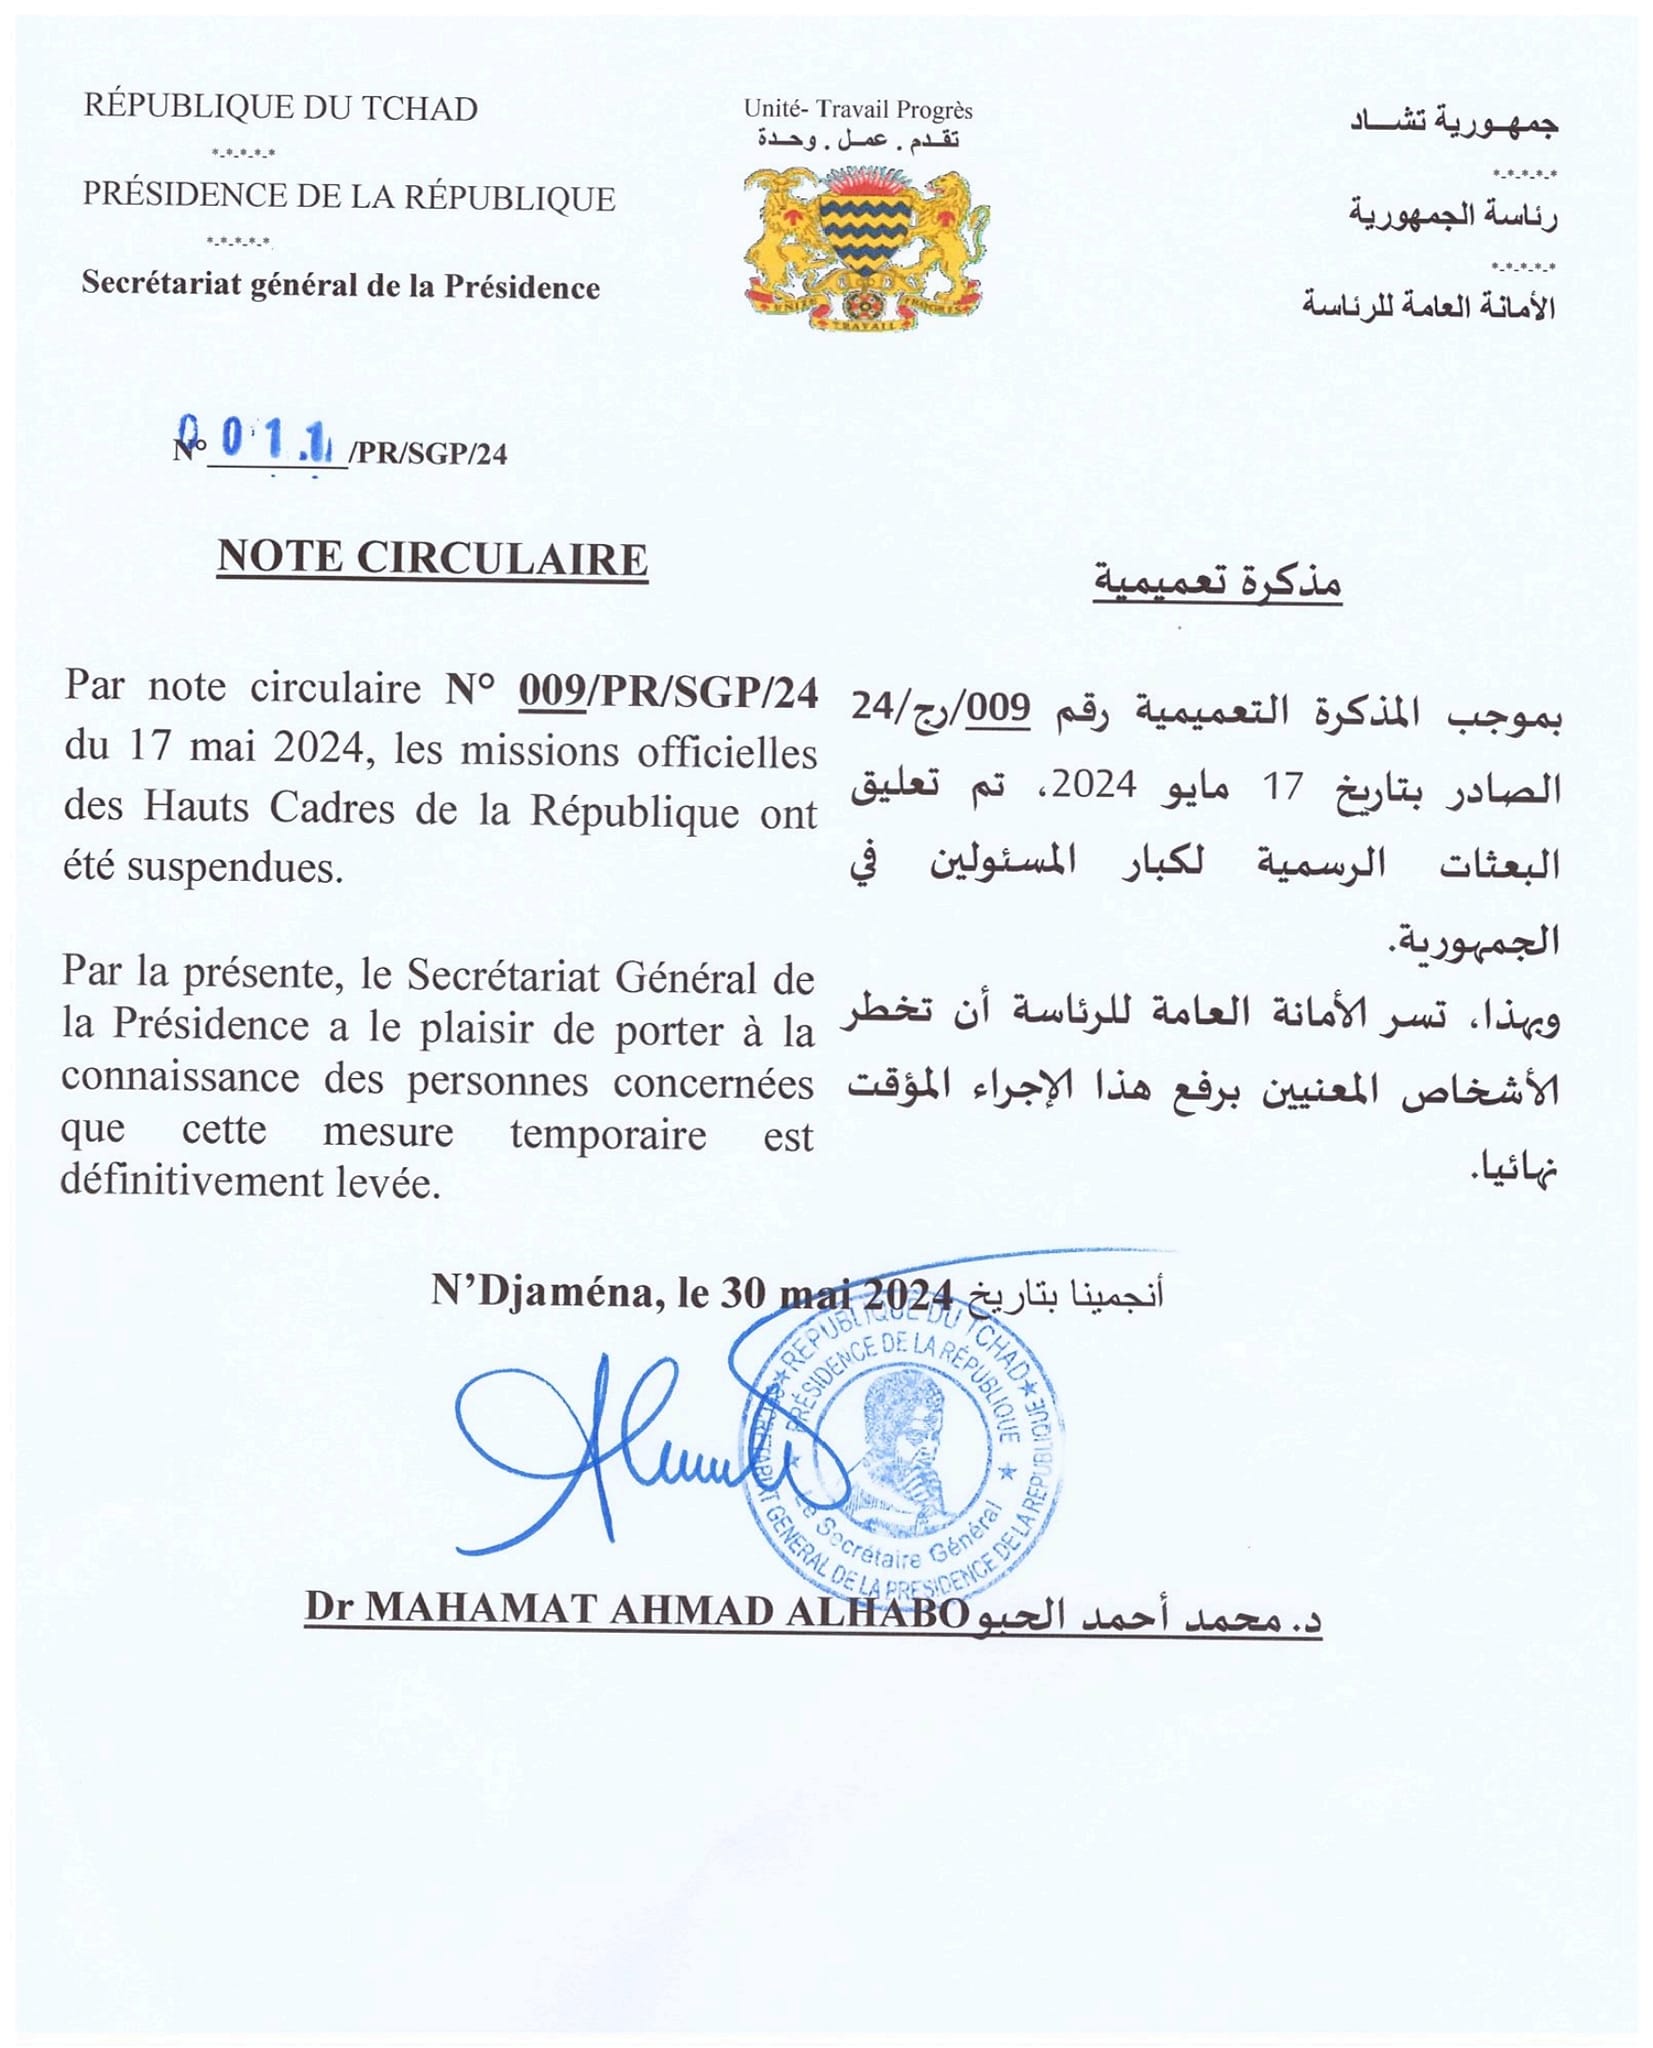 Tchad : la Présidence lève la mesure temporaire de suspension des missions officielles